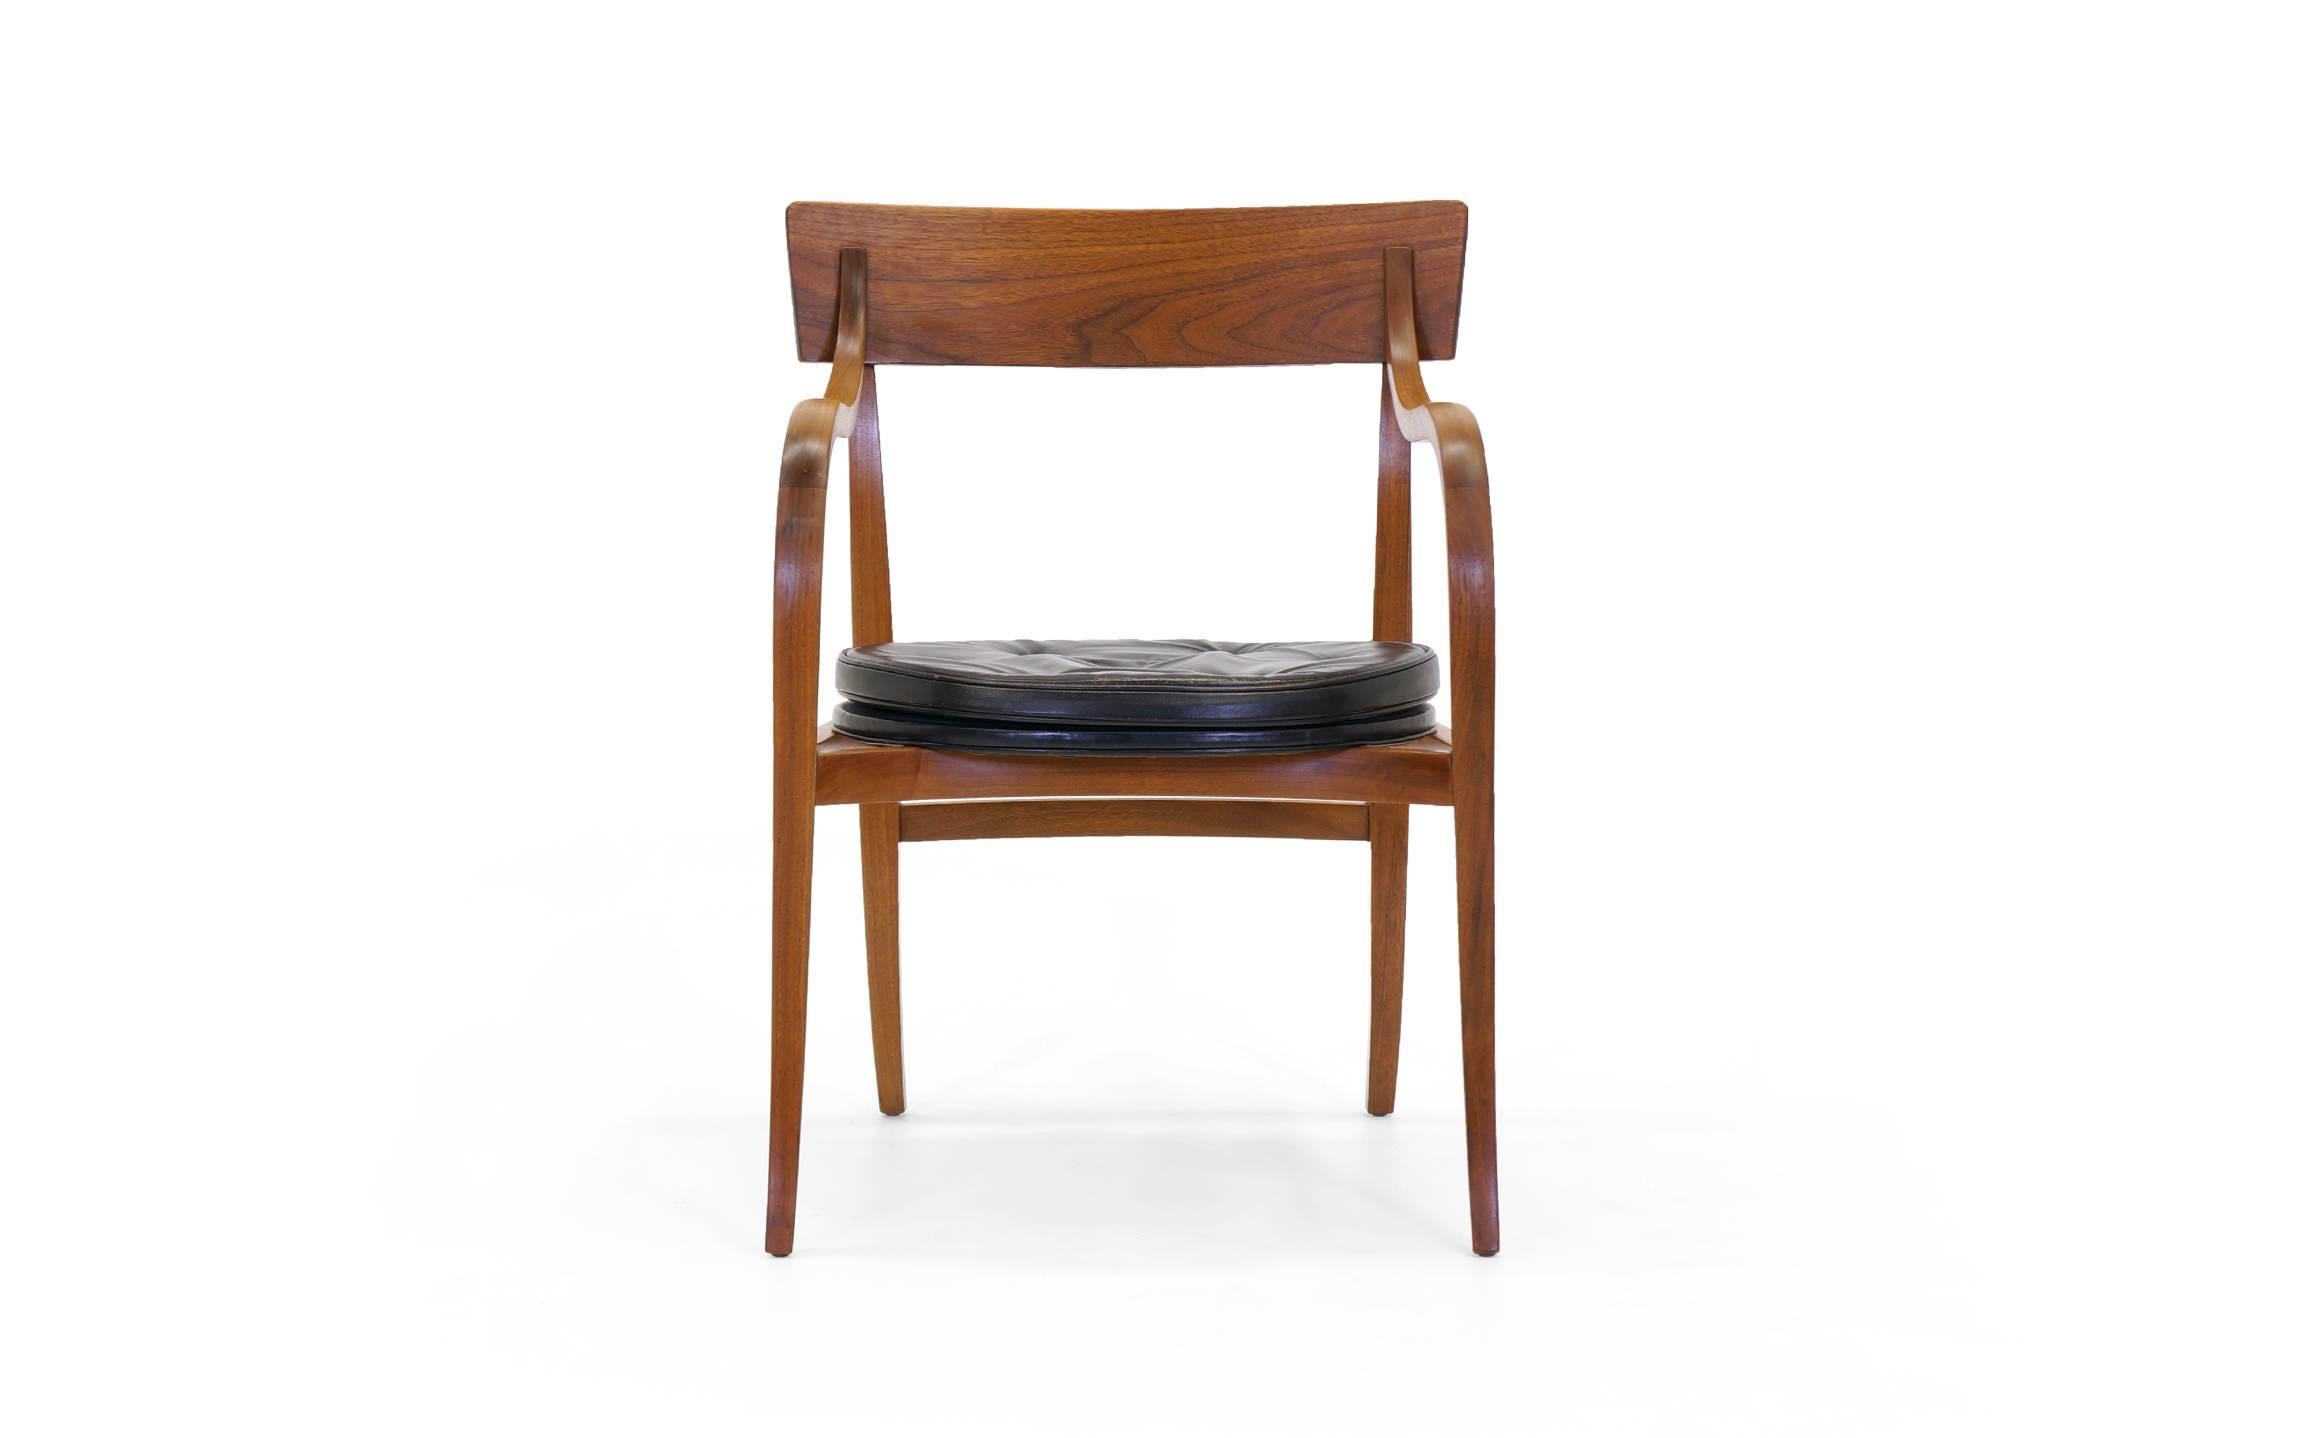 Seltene Gelegenheit. Originales Exemplar des Alexandria Chair, entworfen von Edward Wormley für Dunbar. Behält den originalen, hochwertigen schwarzen Ledersitz mit attraktiven Gebrauchsspuren. Dieser elegante, skulpturale Stuhl ist sehr begehrt, und